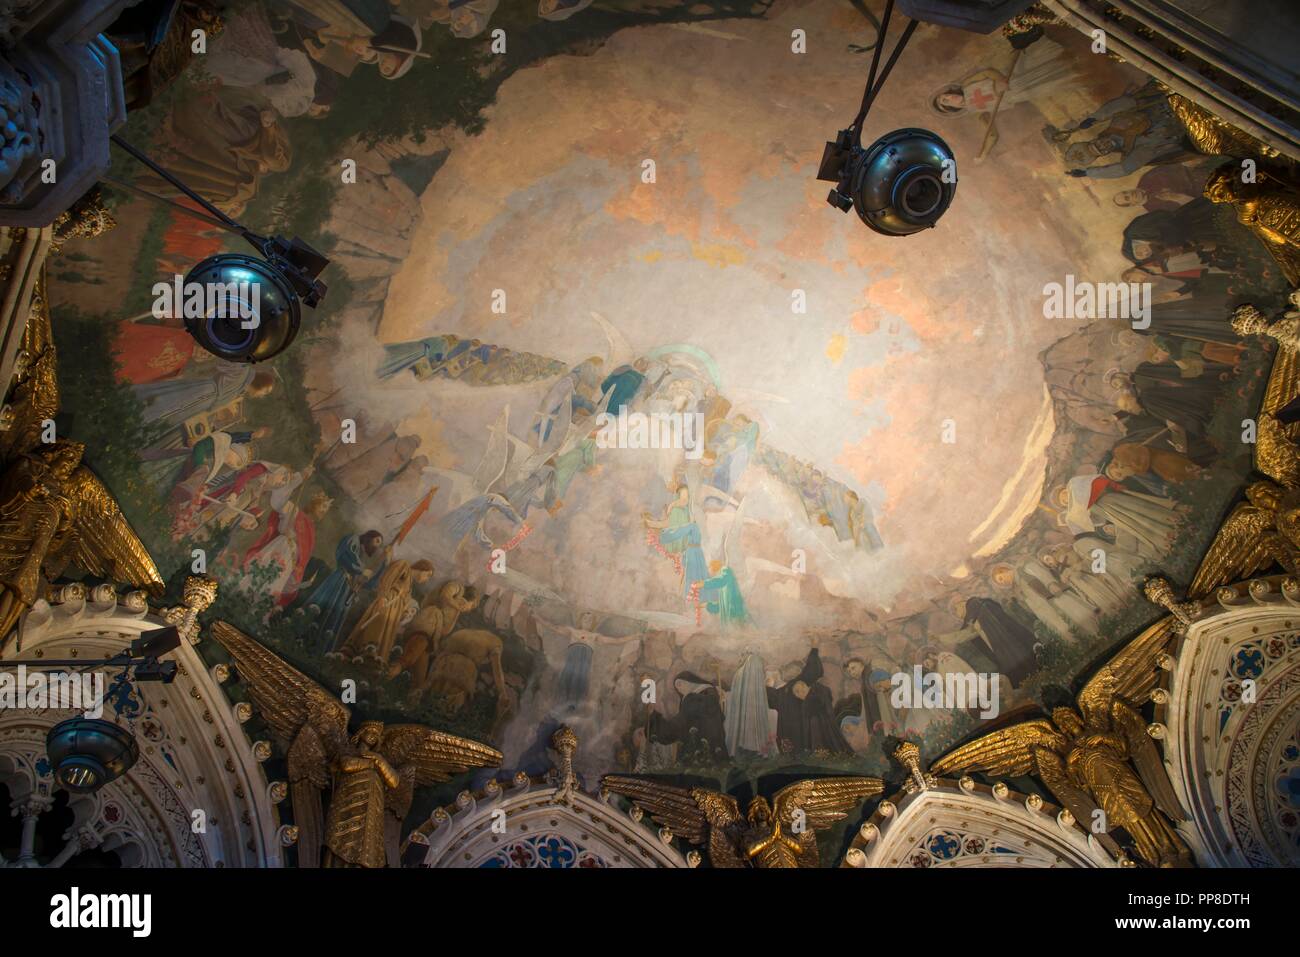 Detalle del Apoteosis de la Virgen, 1896-1898. Pintura mural de la cúpula del cambril de la Virgen. Monasterio de Montserrat. Cataluña. Autor: Llimona, Joan. Foto de stock